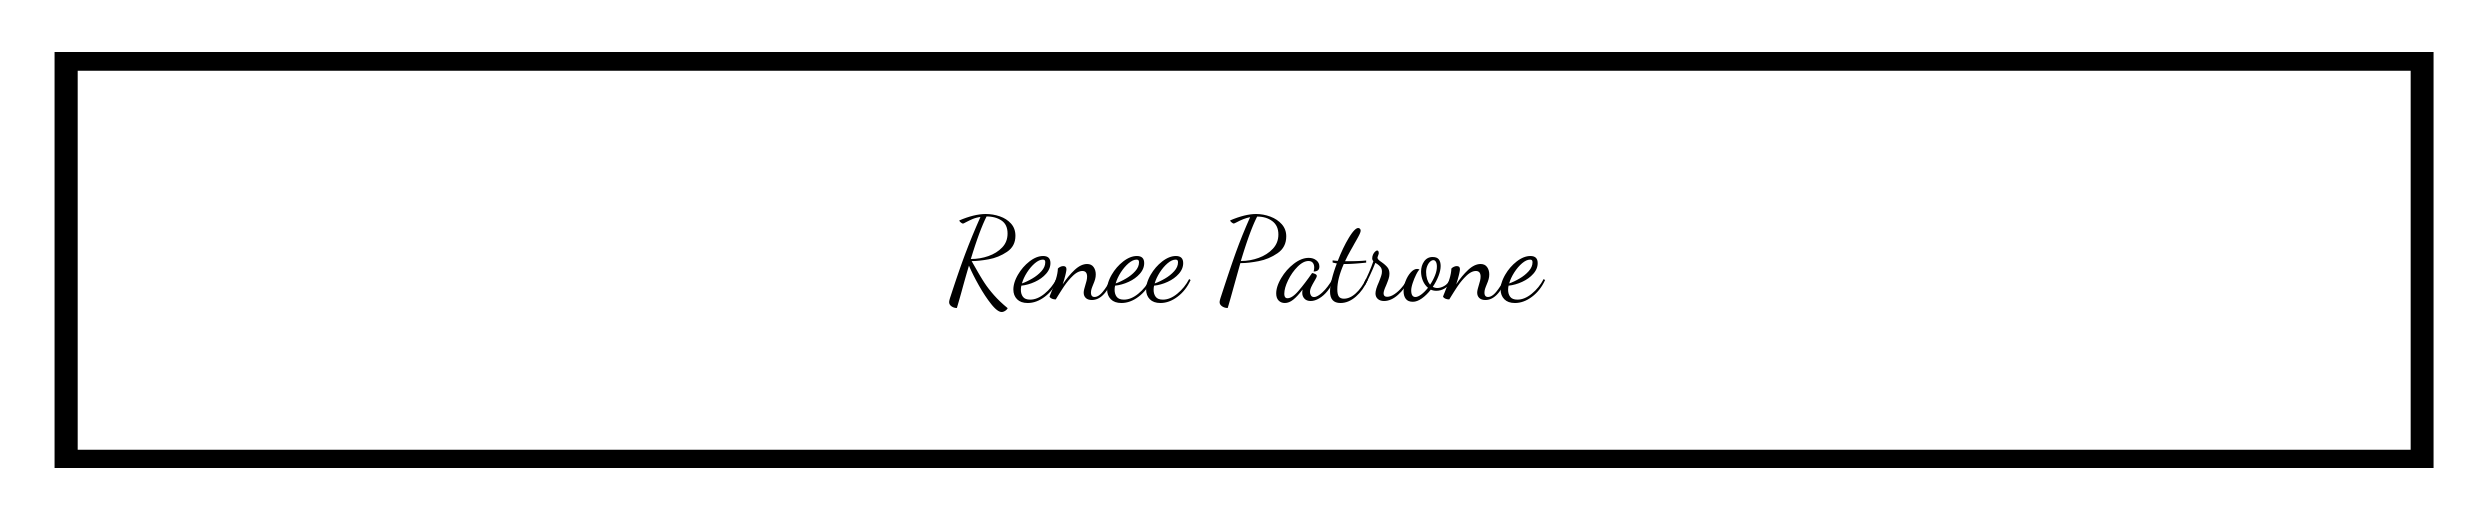 Renee Patrone-2